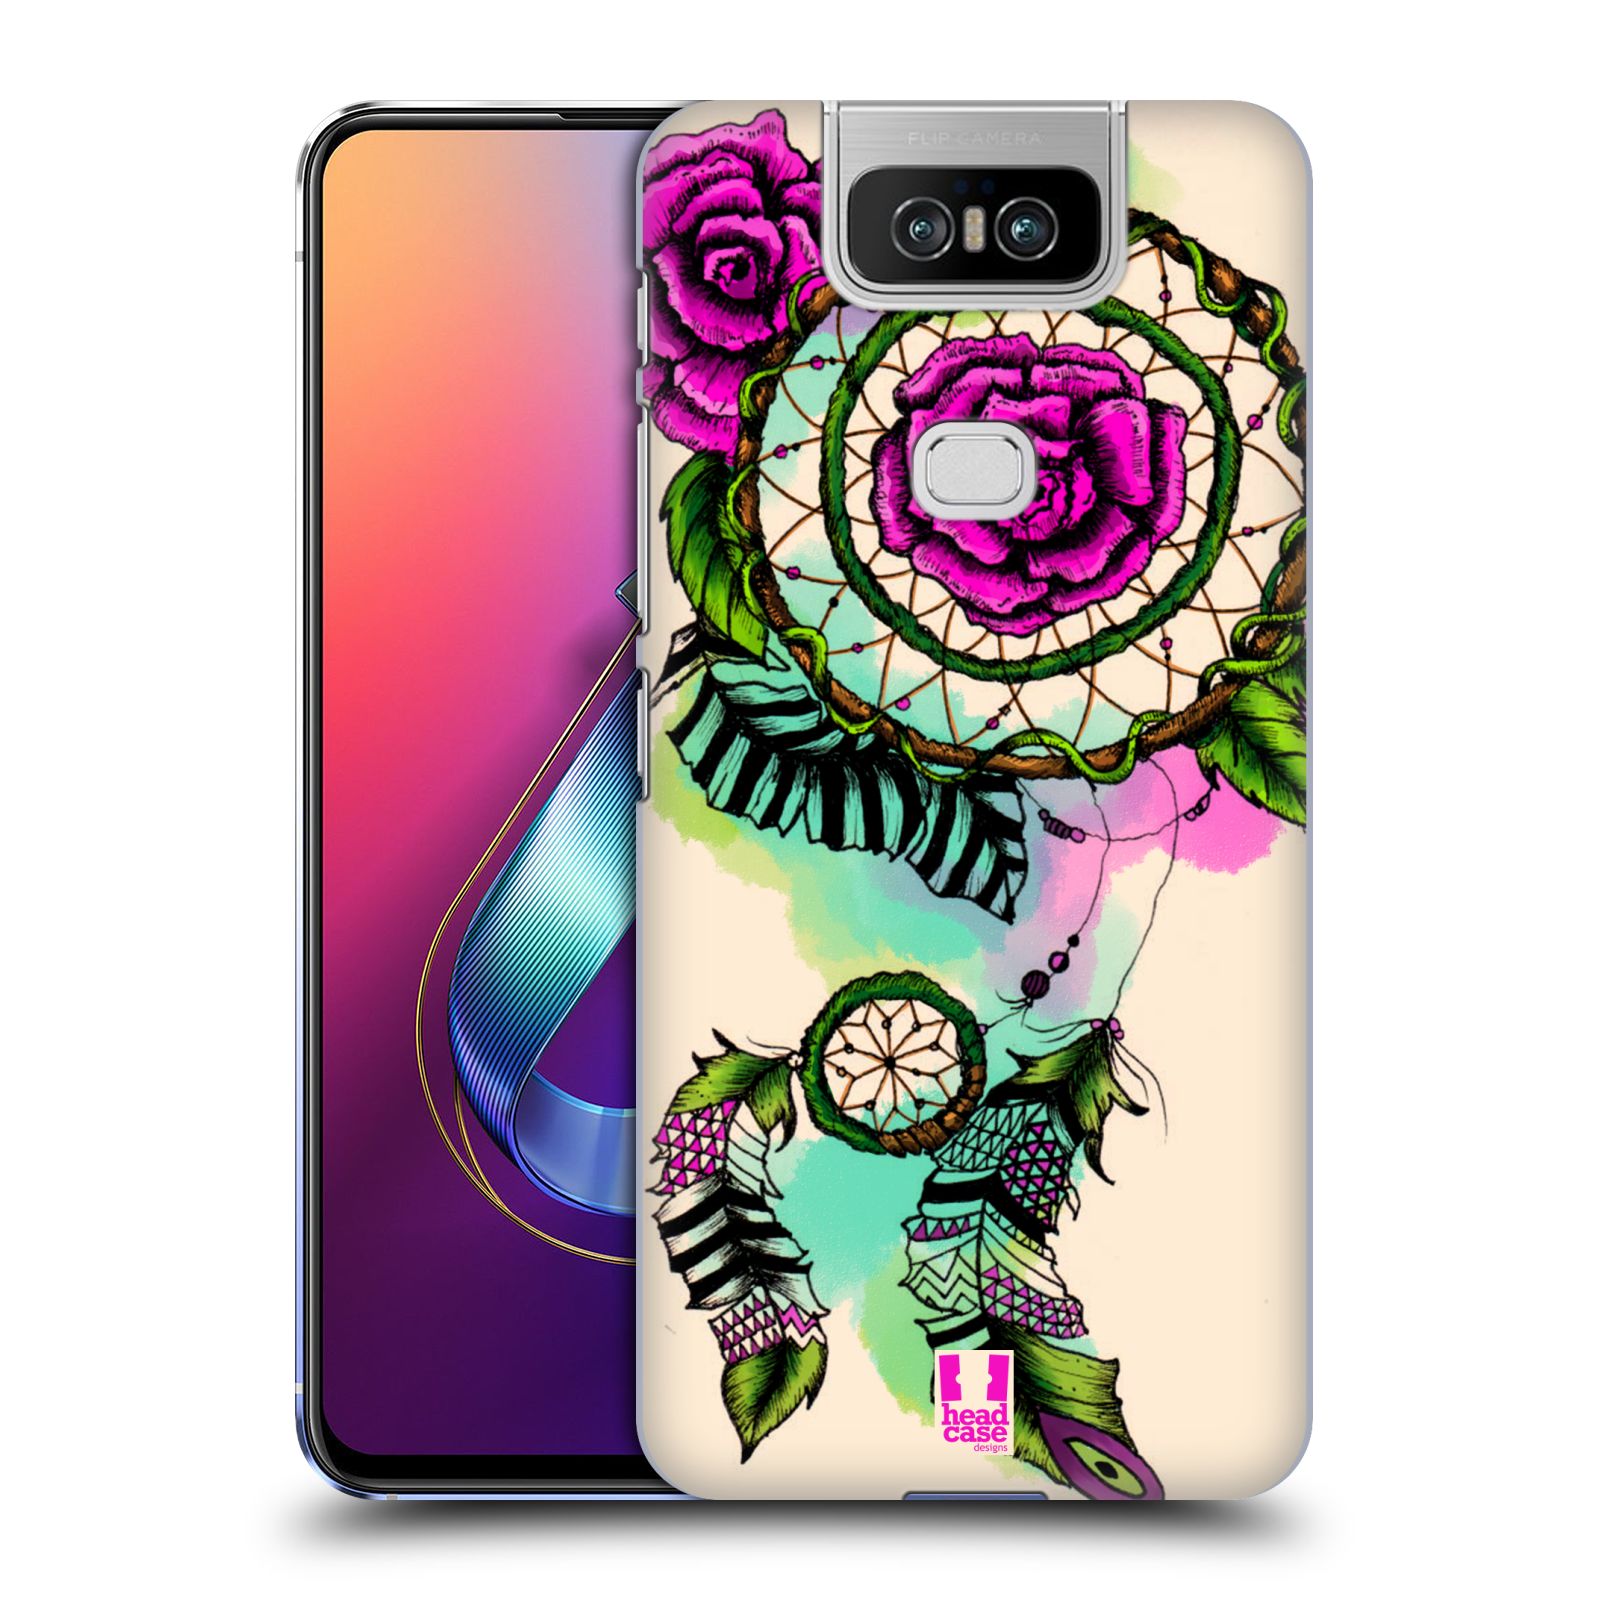 Pouzdro na mobil Asus Zenfone 6 ZS630KL - HEAD CASE - vzor Květy lapač snů růže